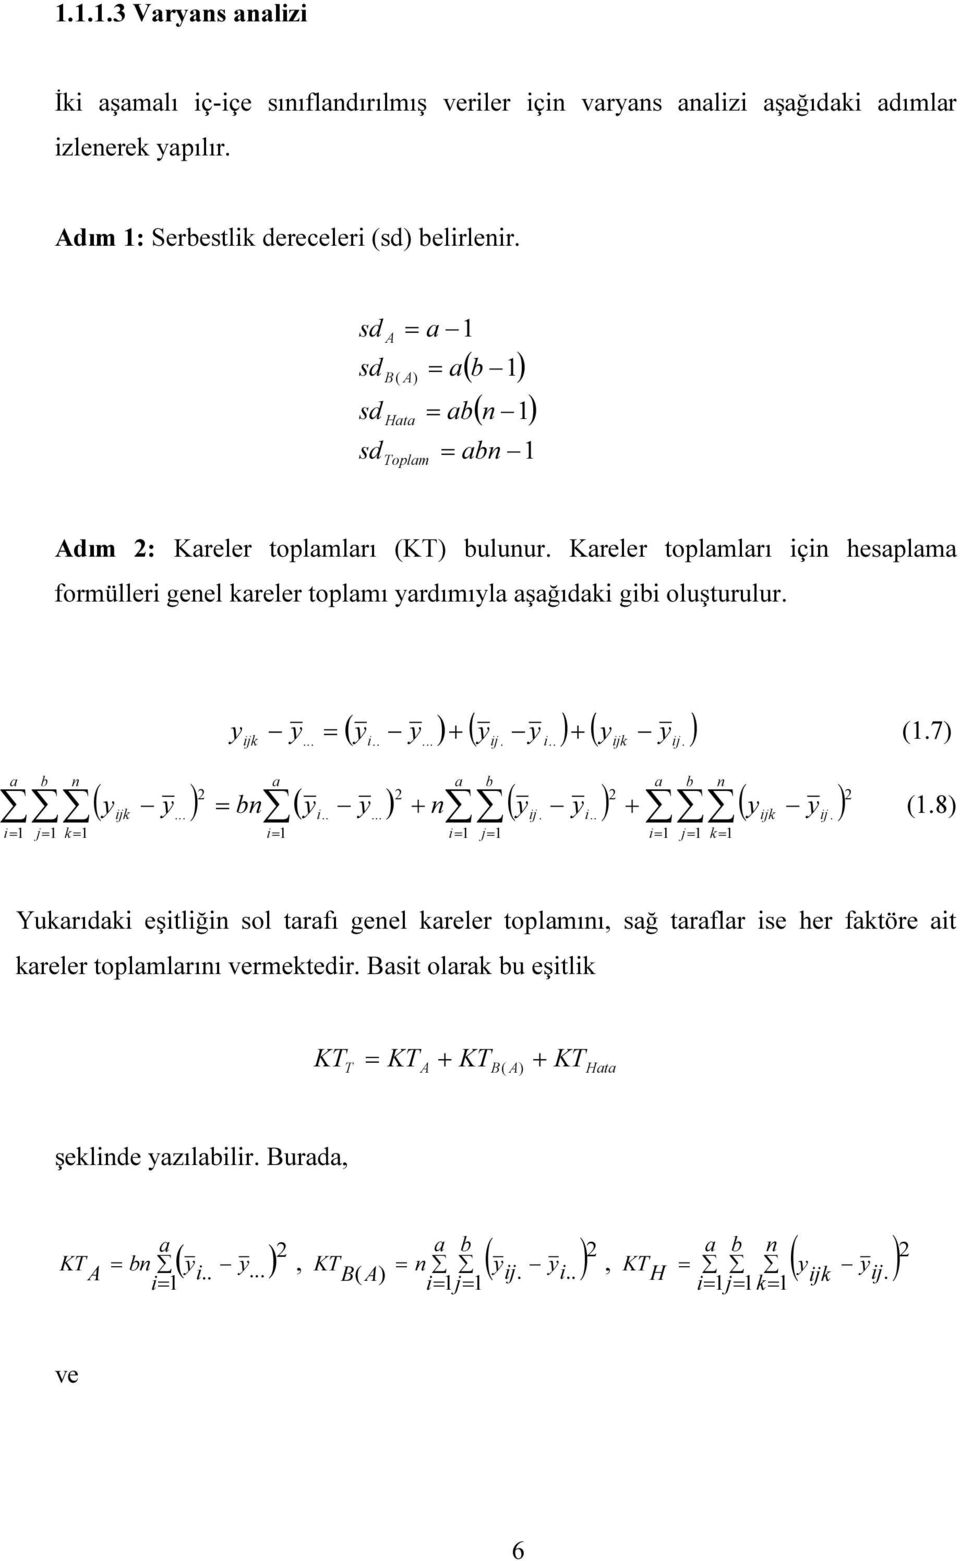 Kreler toplmlrı ç hesplm formüller geel kreler toplmı rdımıl şğıdk gb oluşturulur. jk ( + ( + ( (.7........ j... jk j. b b b ( jk b (..... + ( j.